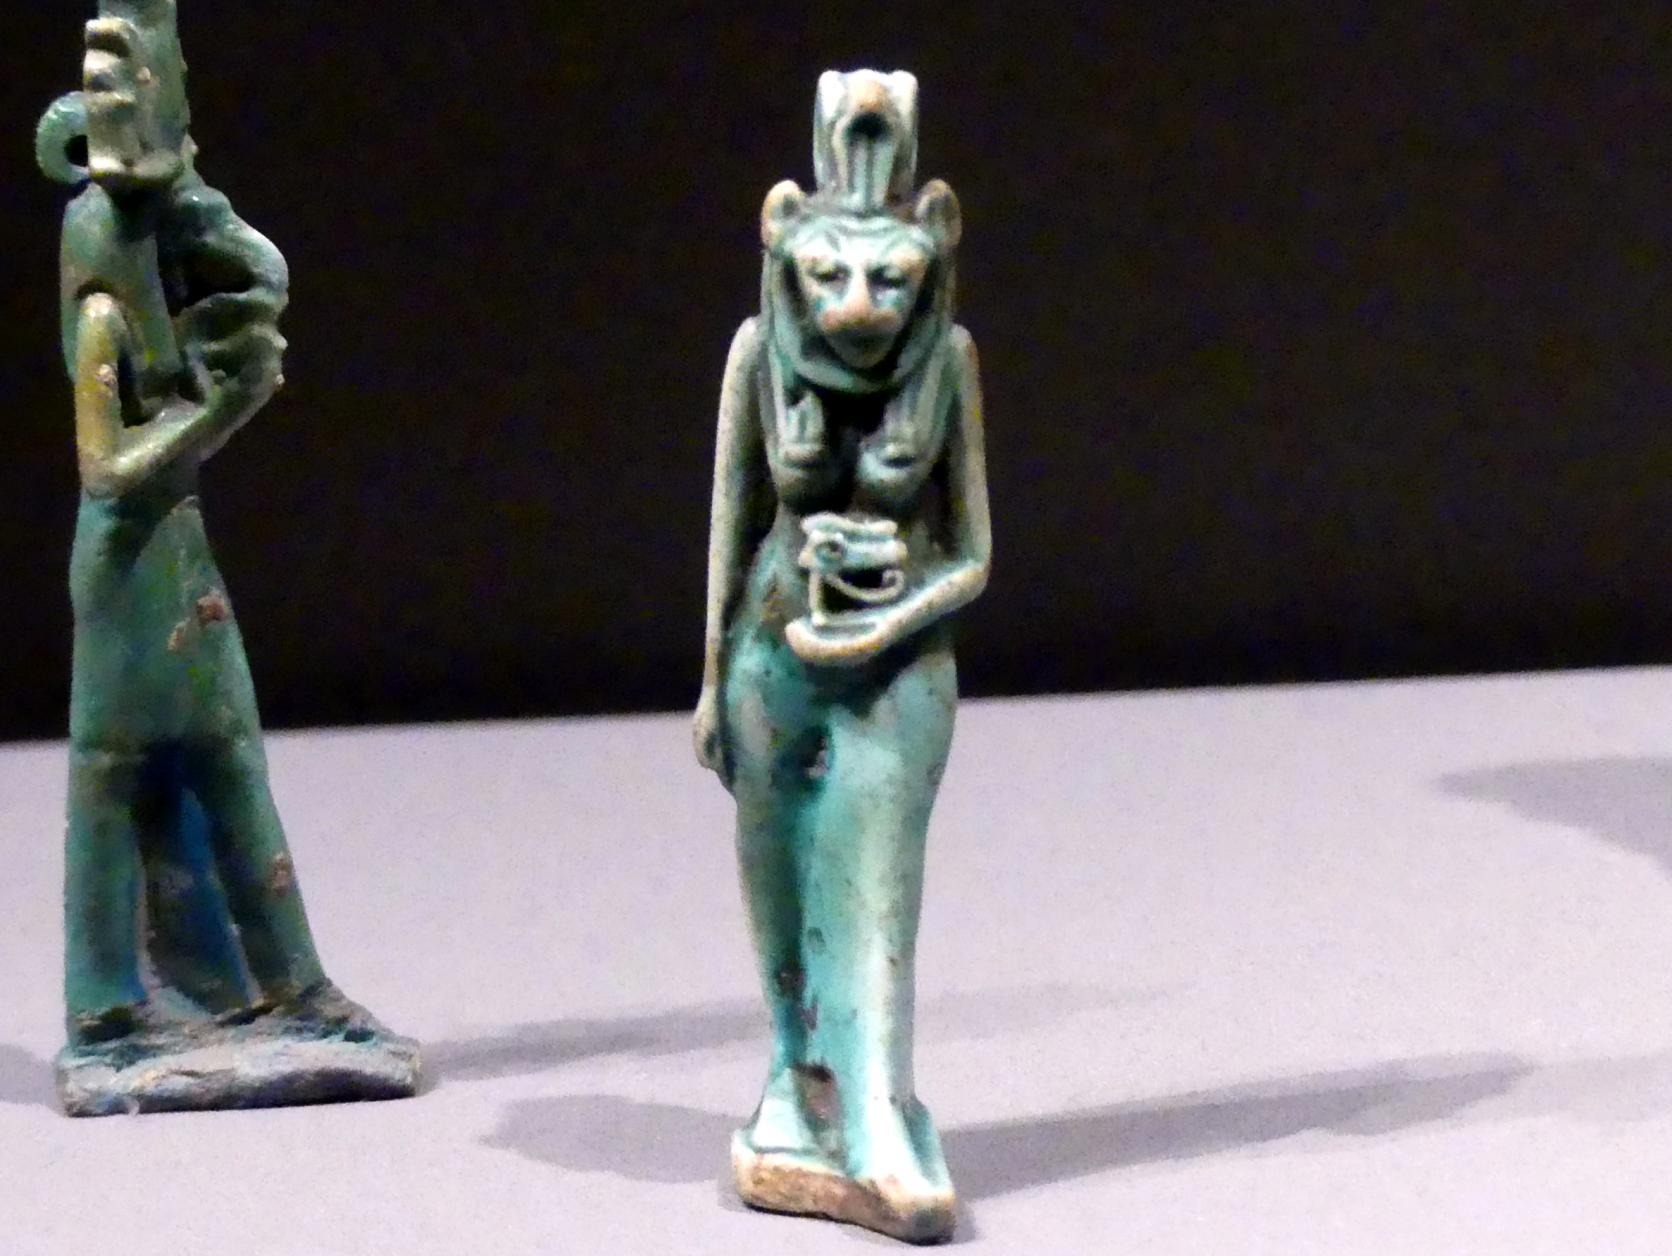 Standfigur der Sachmet, das geheilte Horusauge (Udjat) tragend, 1000 - 500 v. Chr.